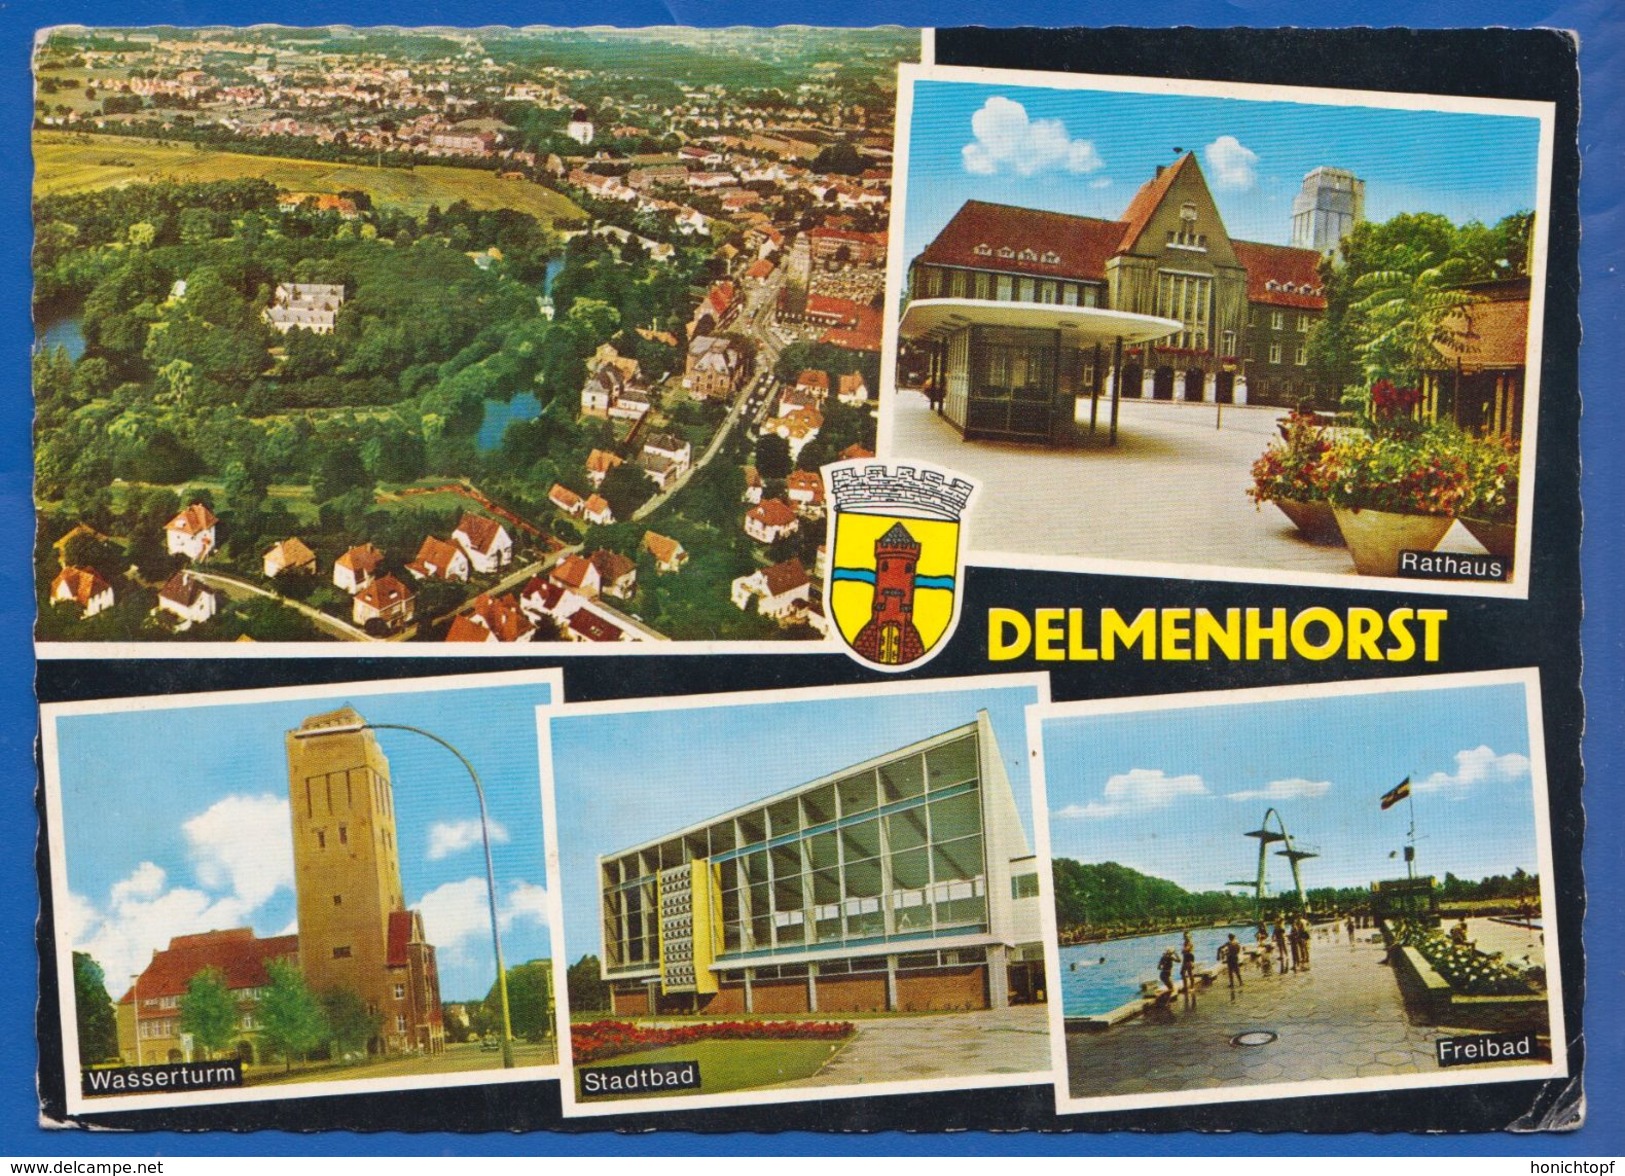 Deutschland; Delmenhorst; Multibildkarte Mit Stadtbad Und Freibad - Delmenhorst